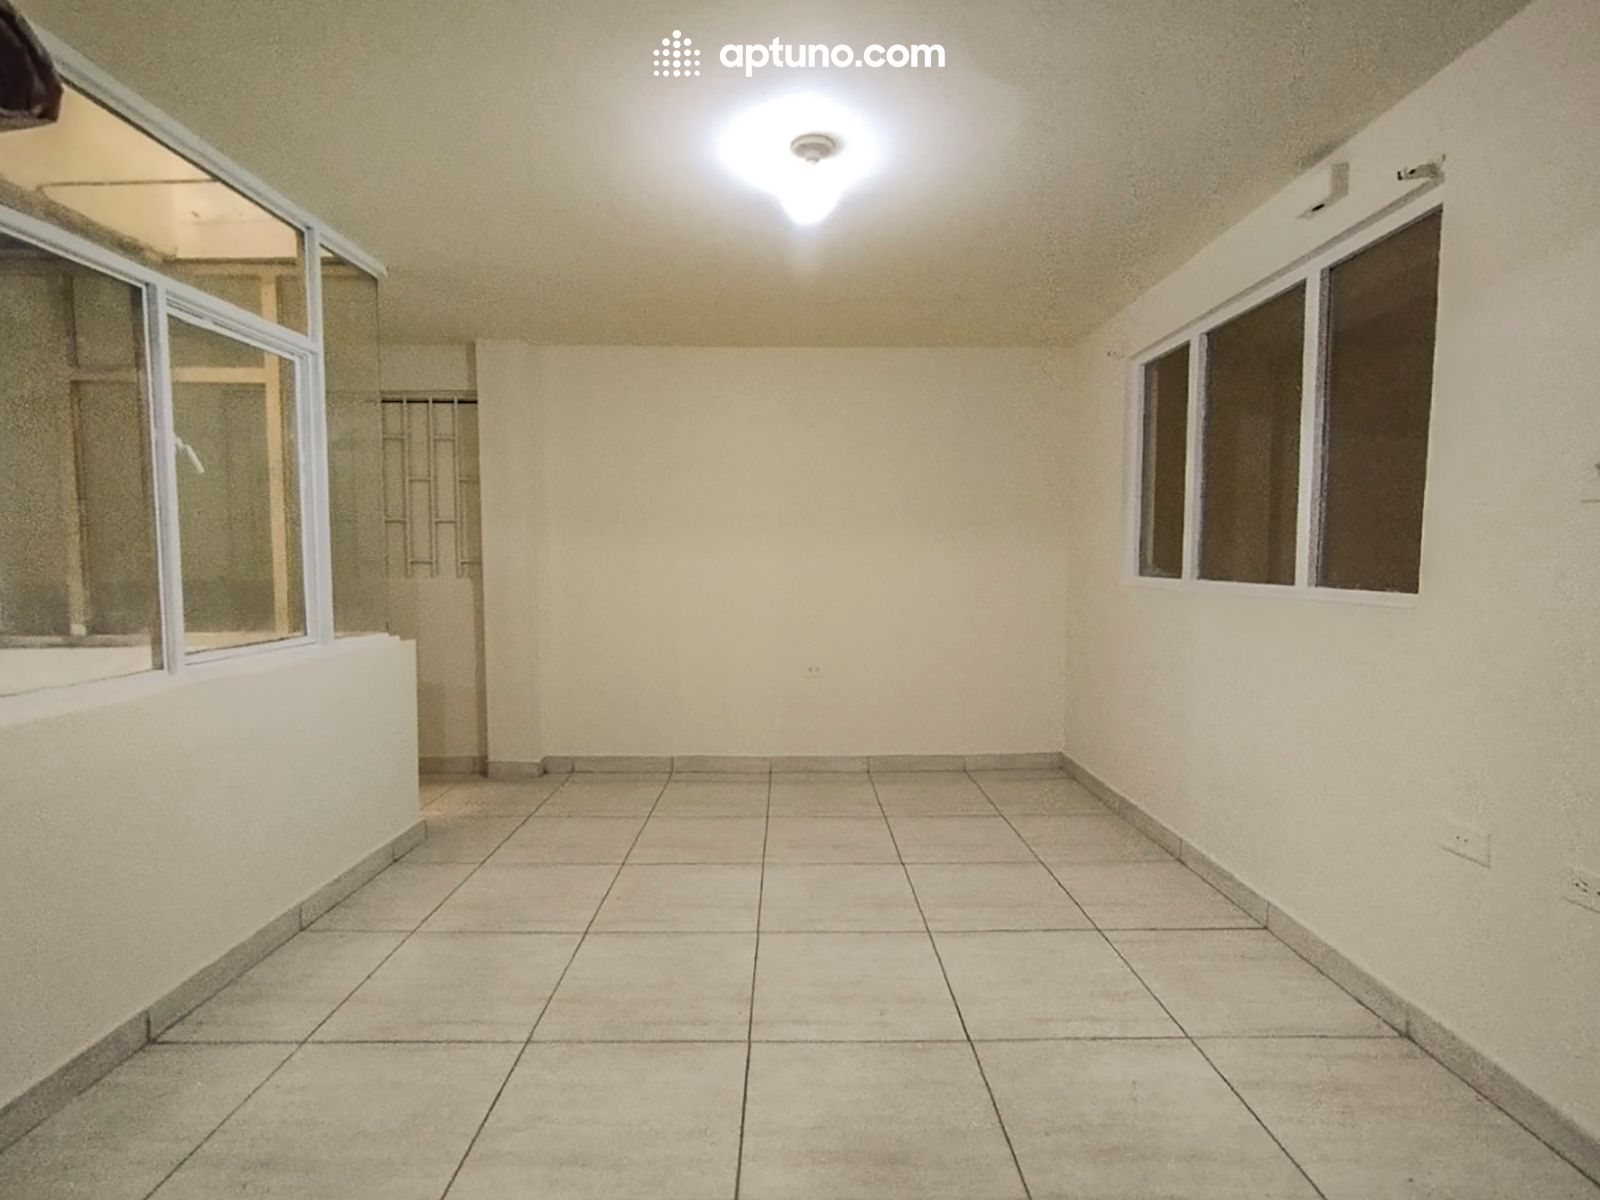 Apartamento en arriendo Brasil 60 m² - $ 650.000,00